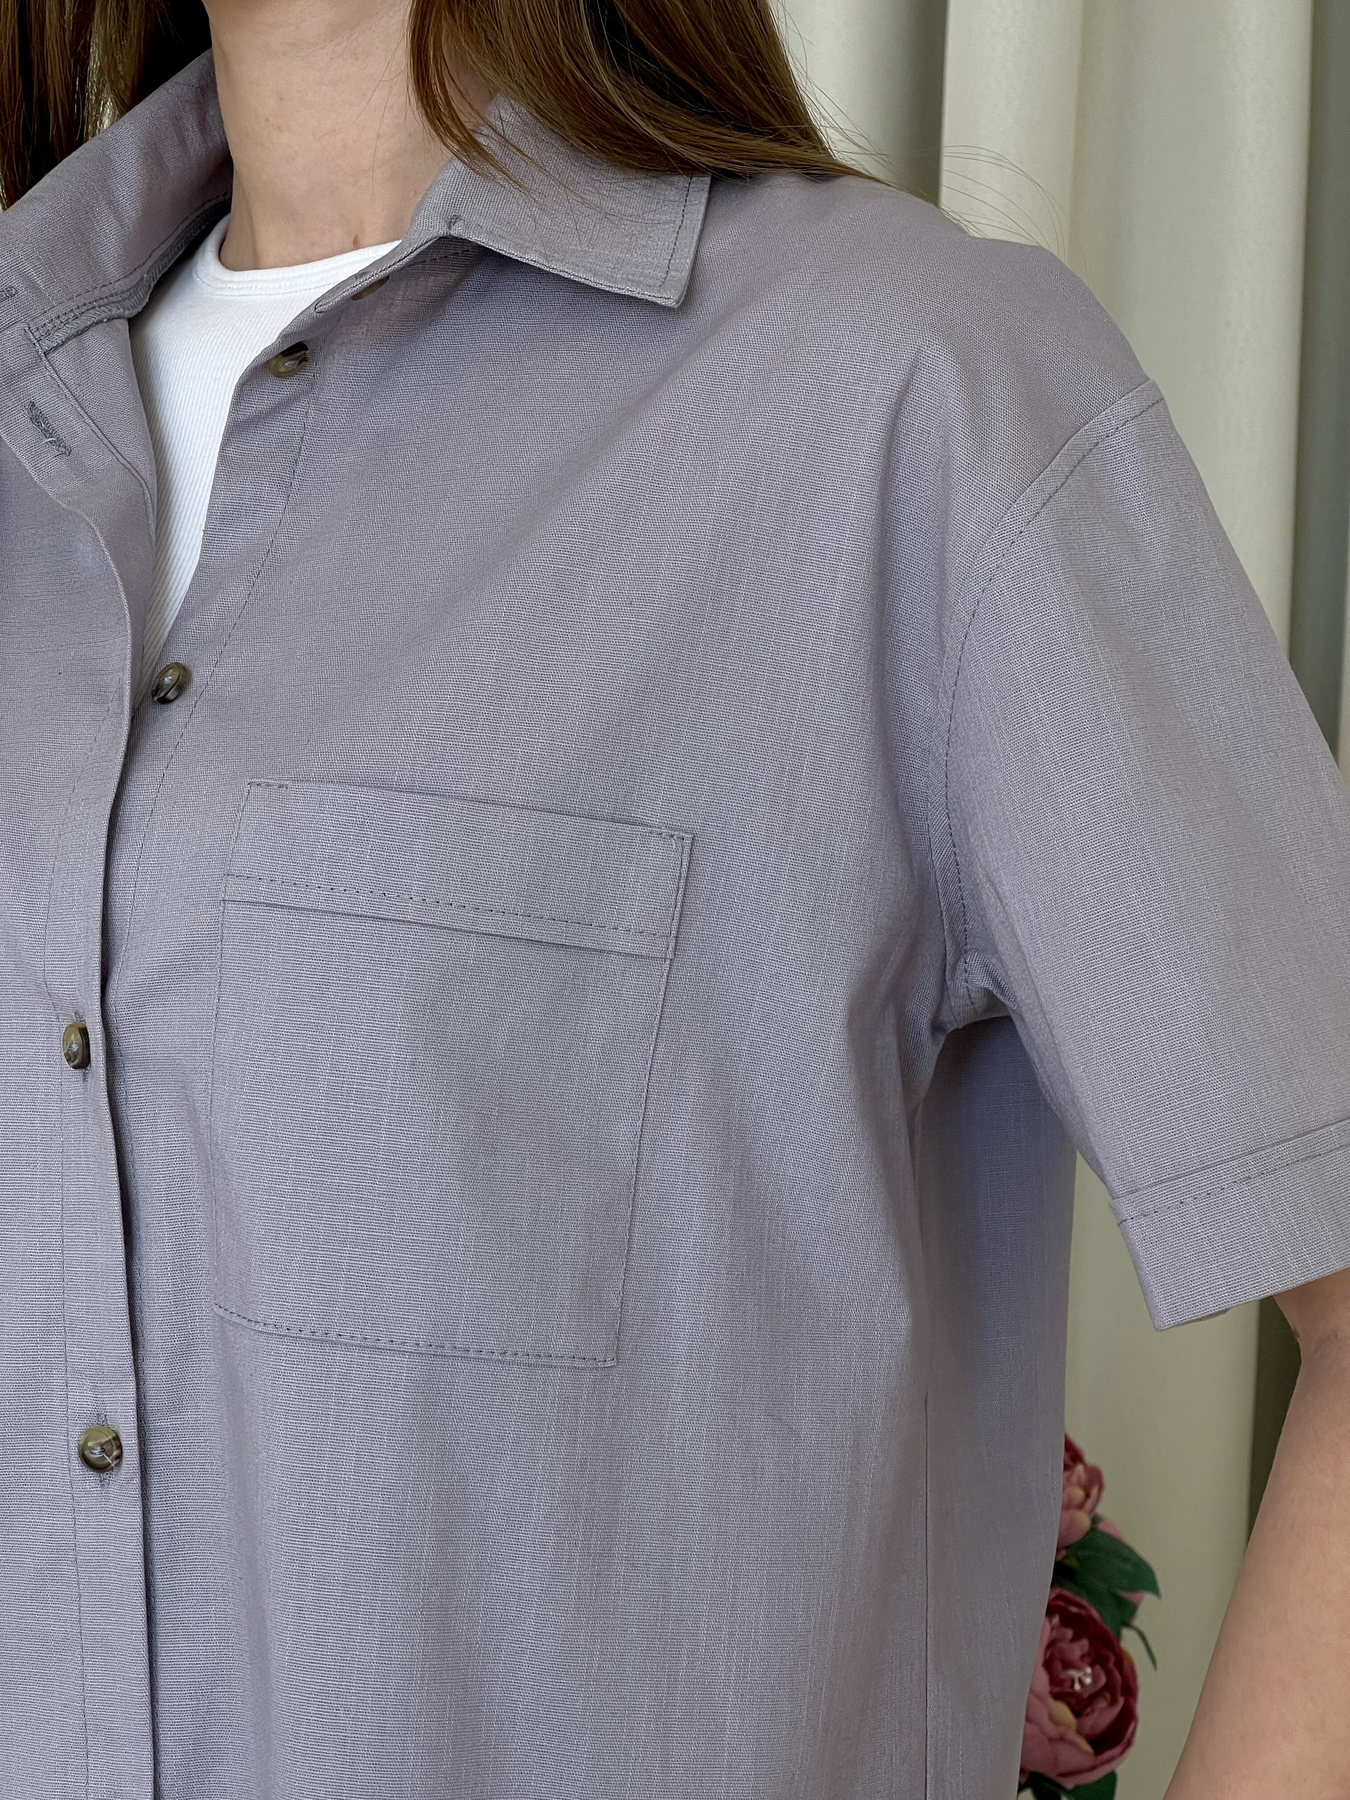 Купить Льняная рубашка с коротким рукавом серая Merlini Нино 200001203 размер 42-44 (S-M) в интернет-магазине